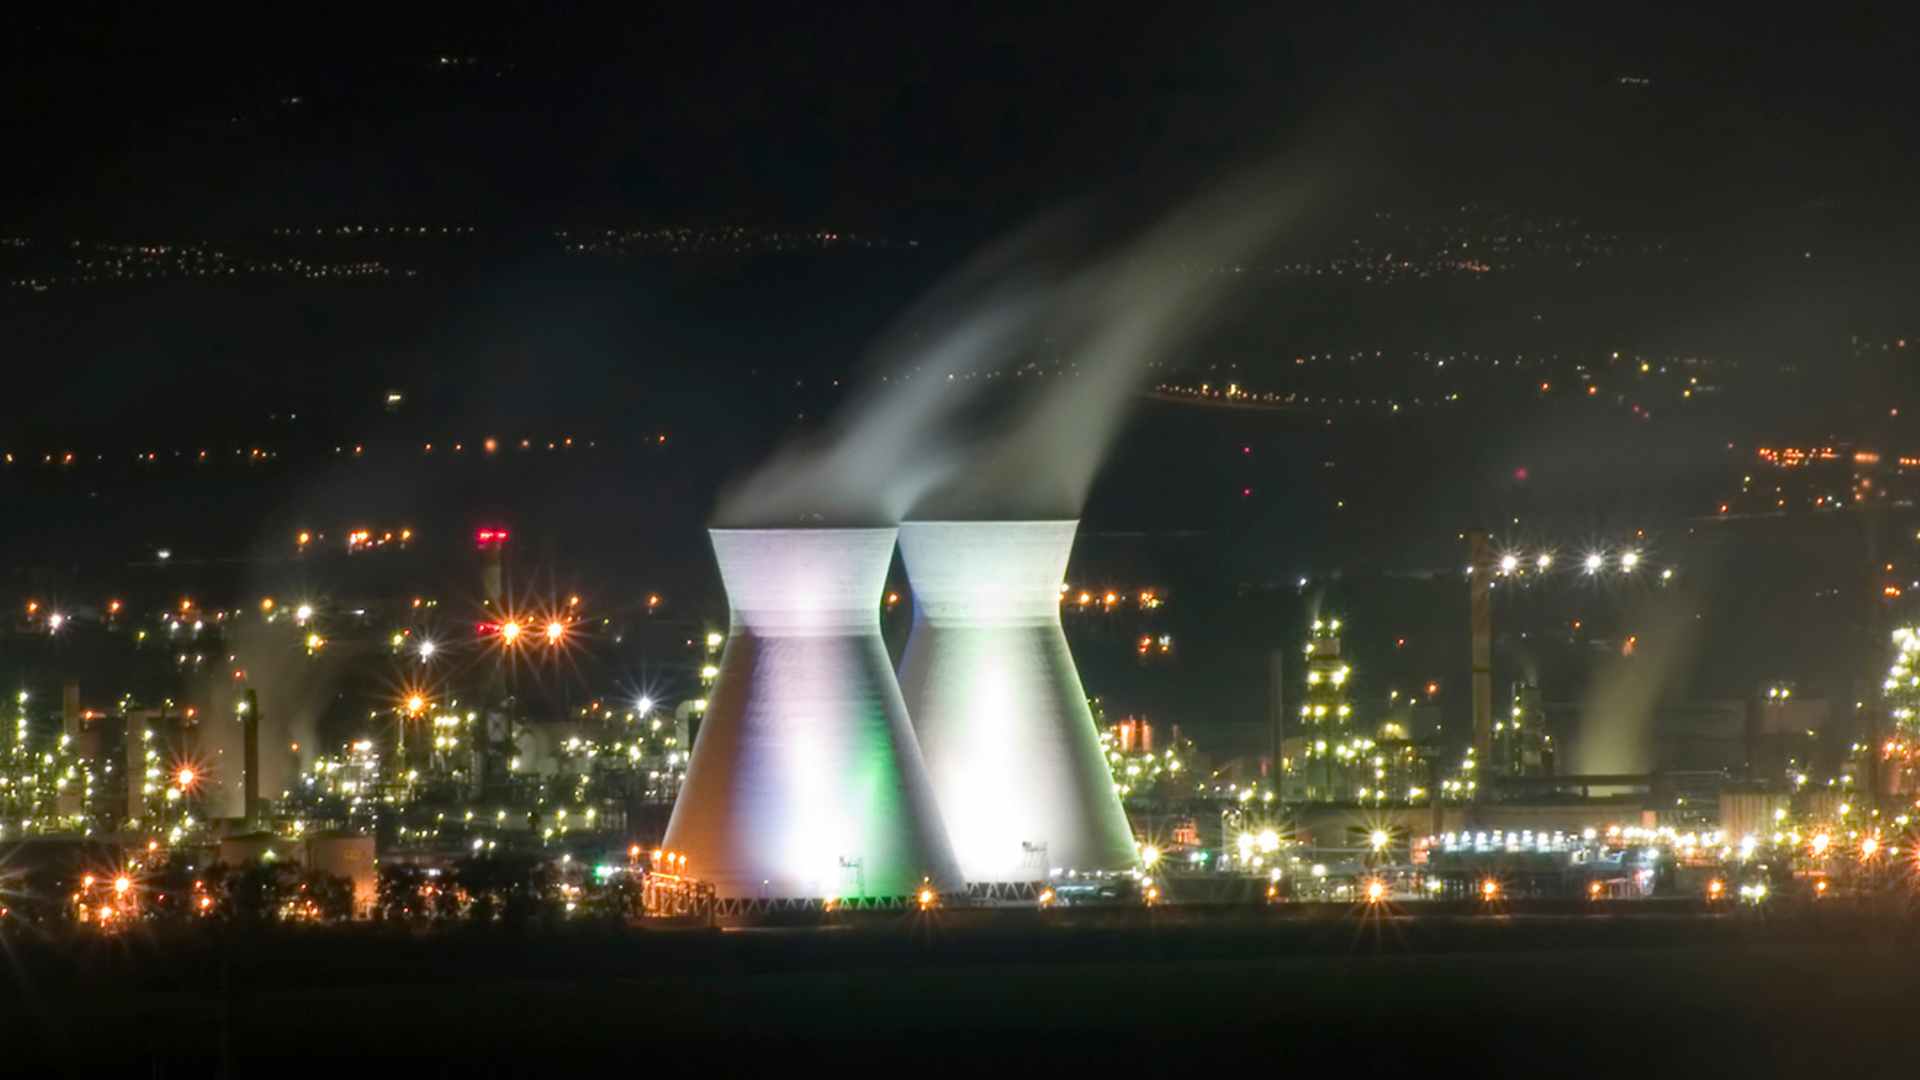 Haifa's oil refinery at night